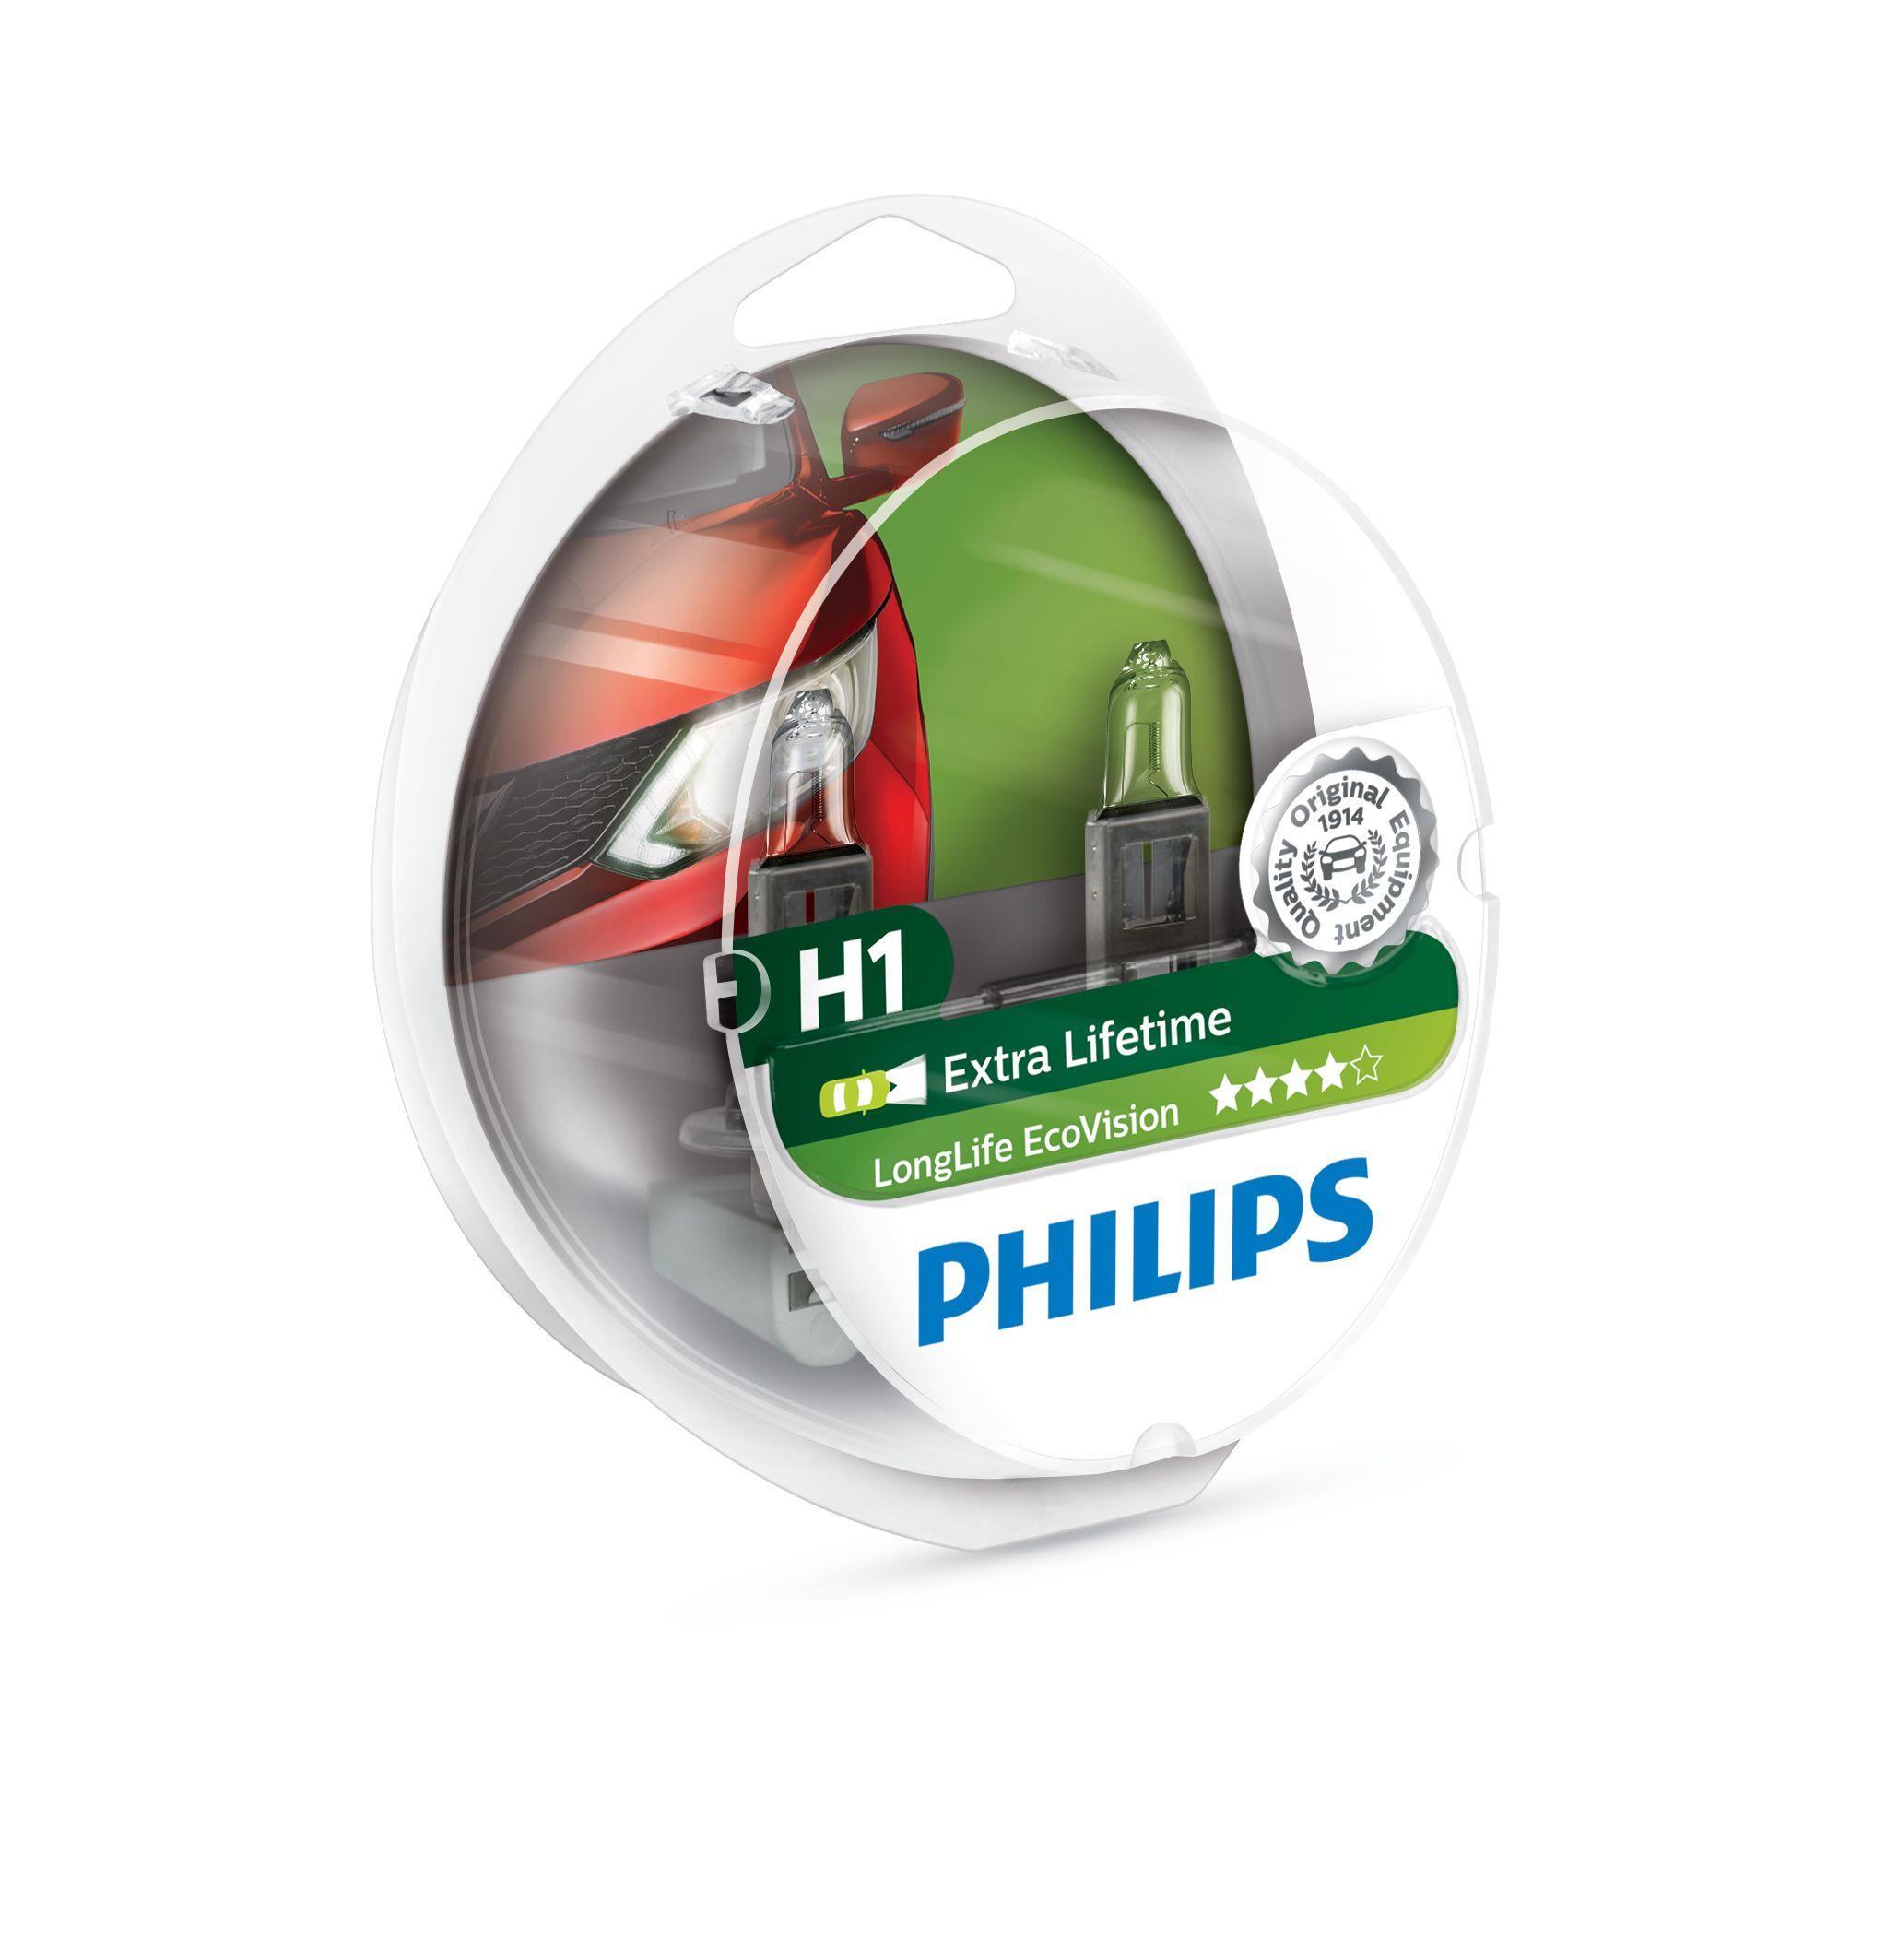 Philips LongLife EcoVision Type lamp: H1, verpakking van 2, koplamp voor auto